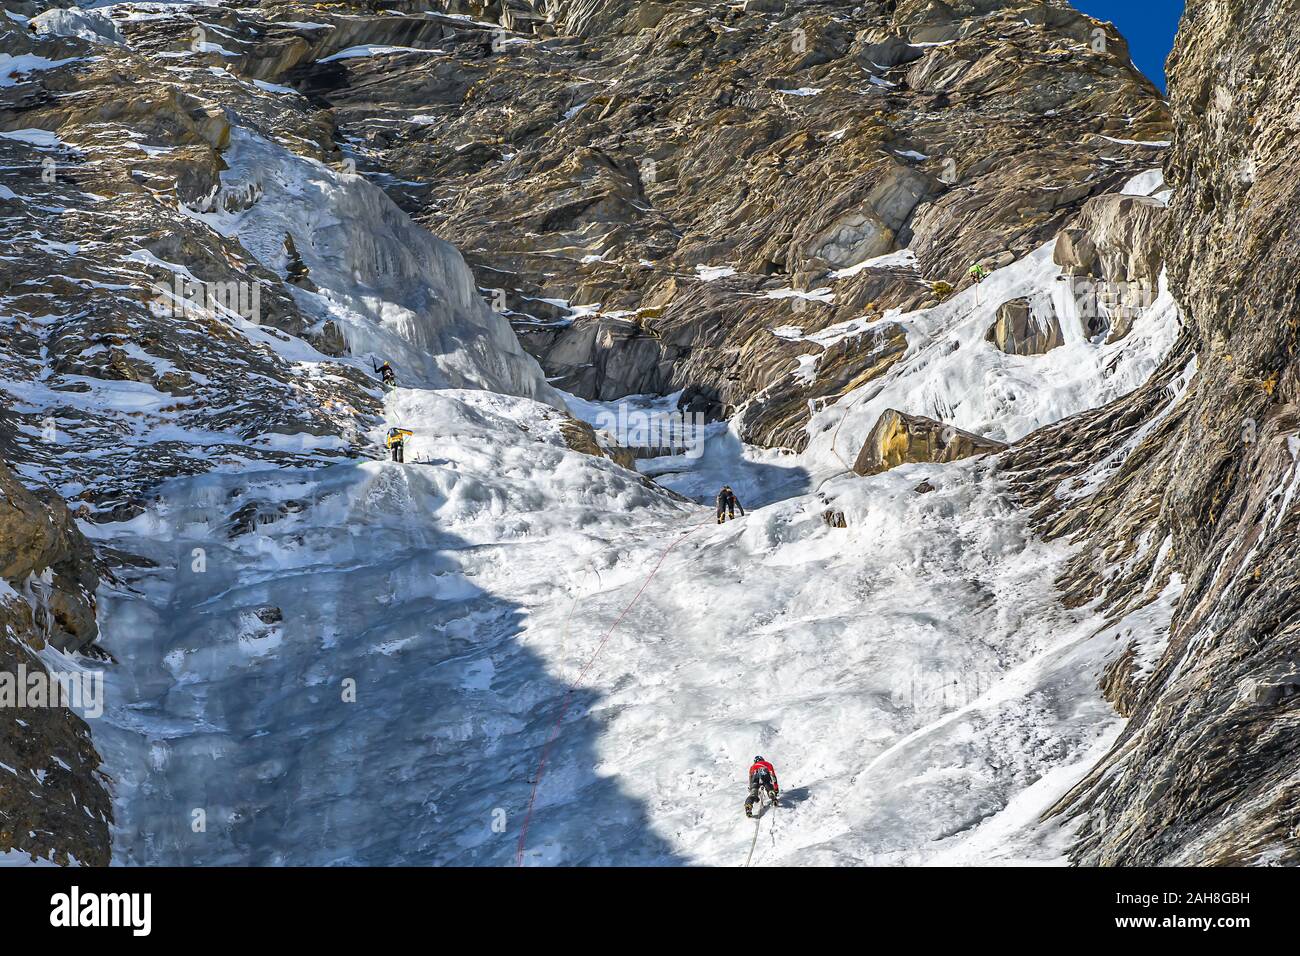 Eis fällt in der oberen Varaita Tal, ein Ziel für erfahrene Kletterer aus der ganzen Welt Stockfoto